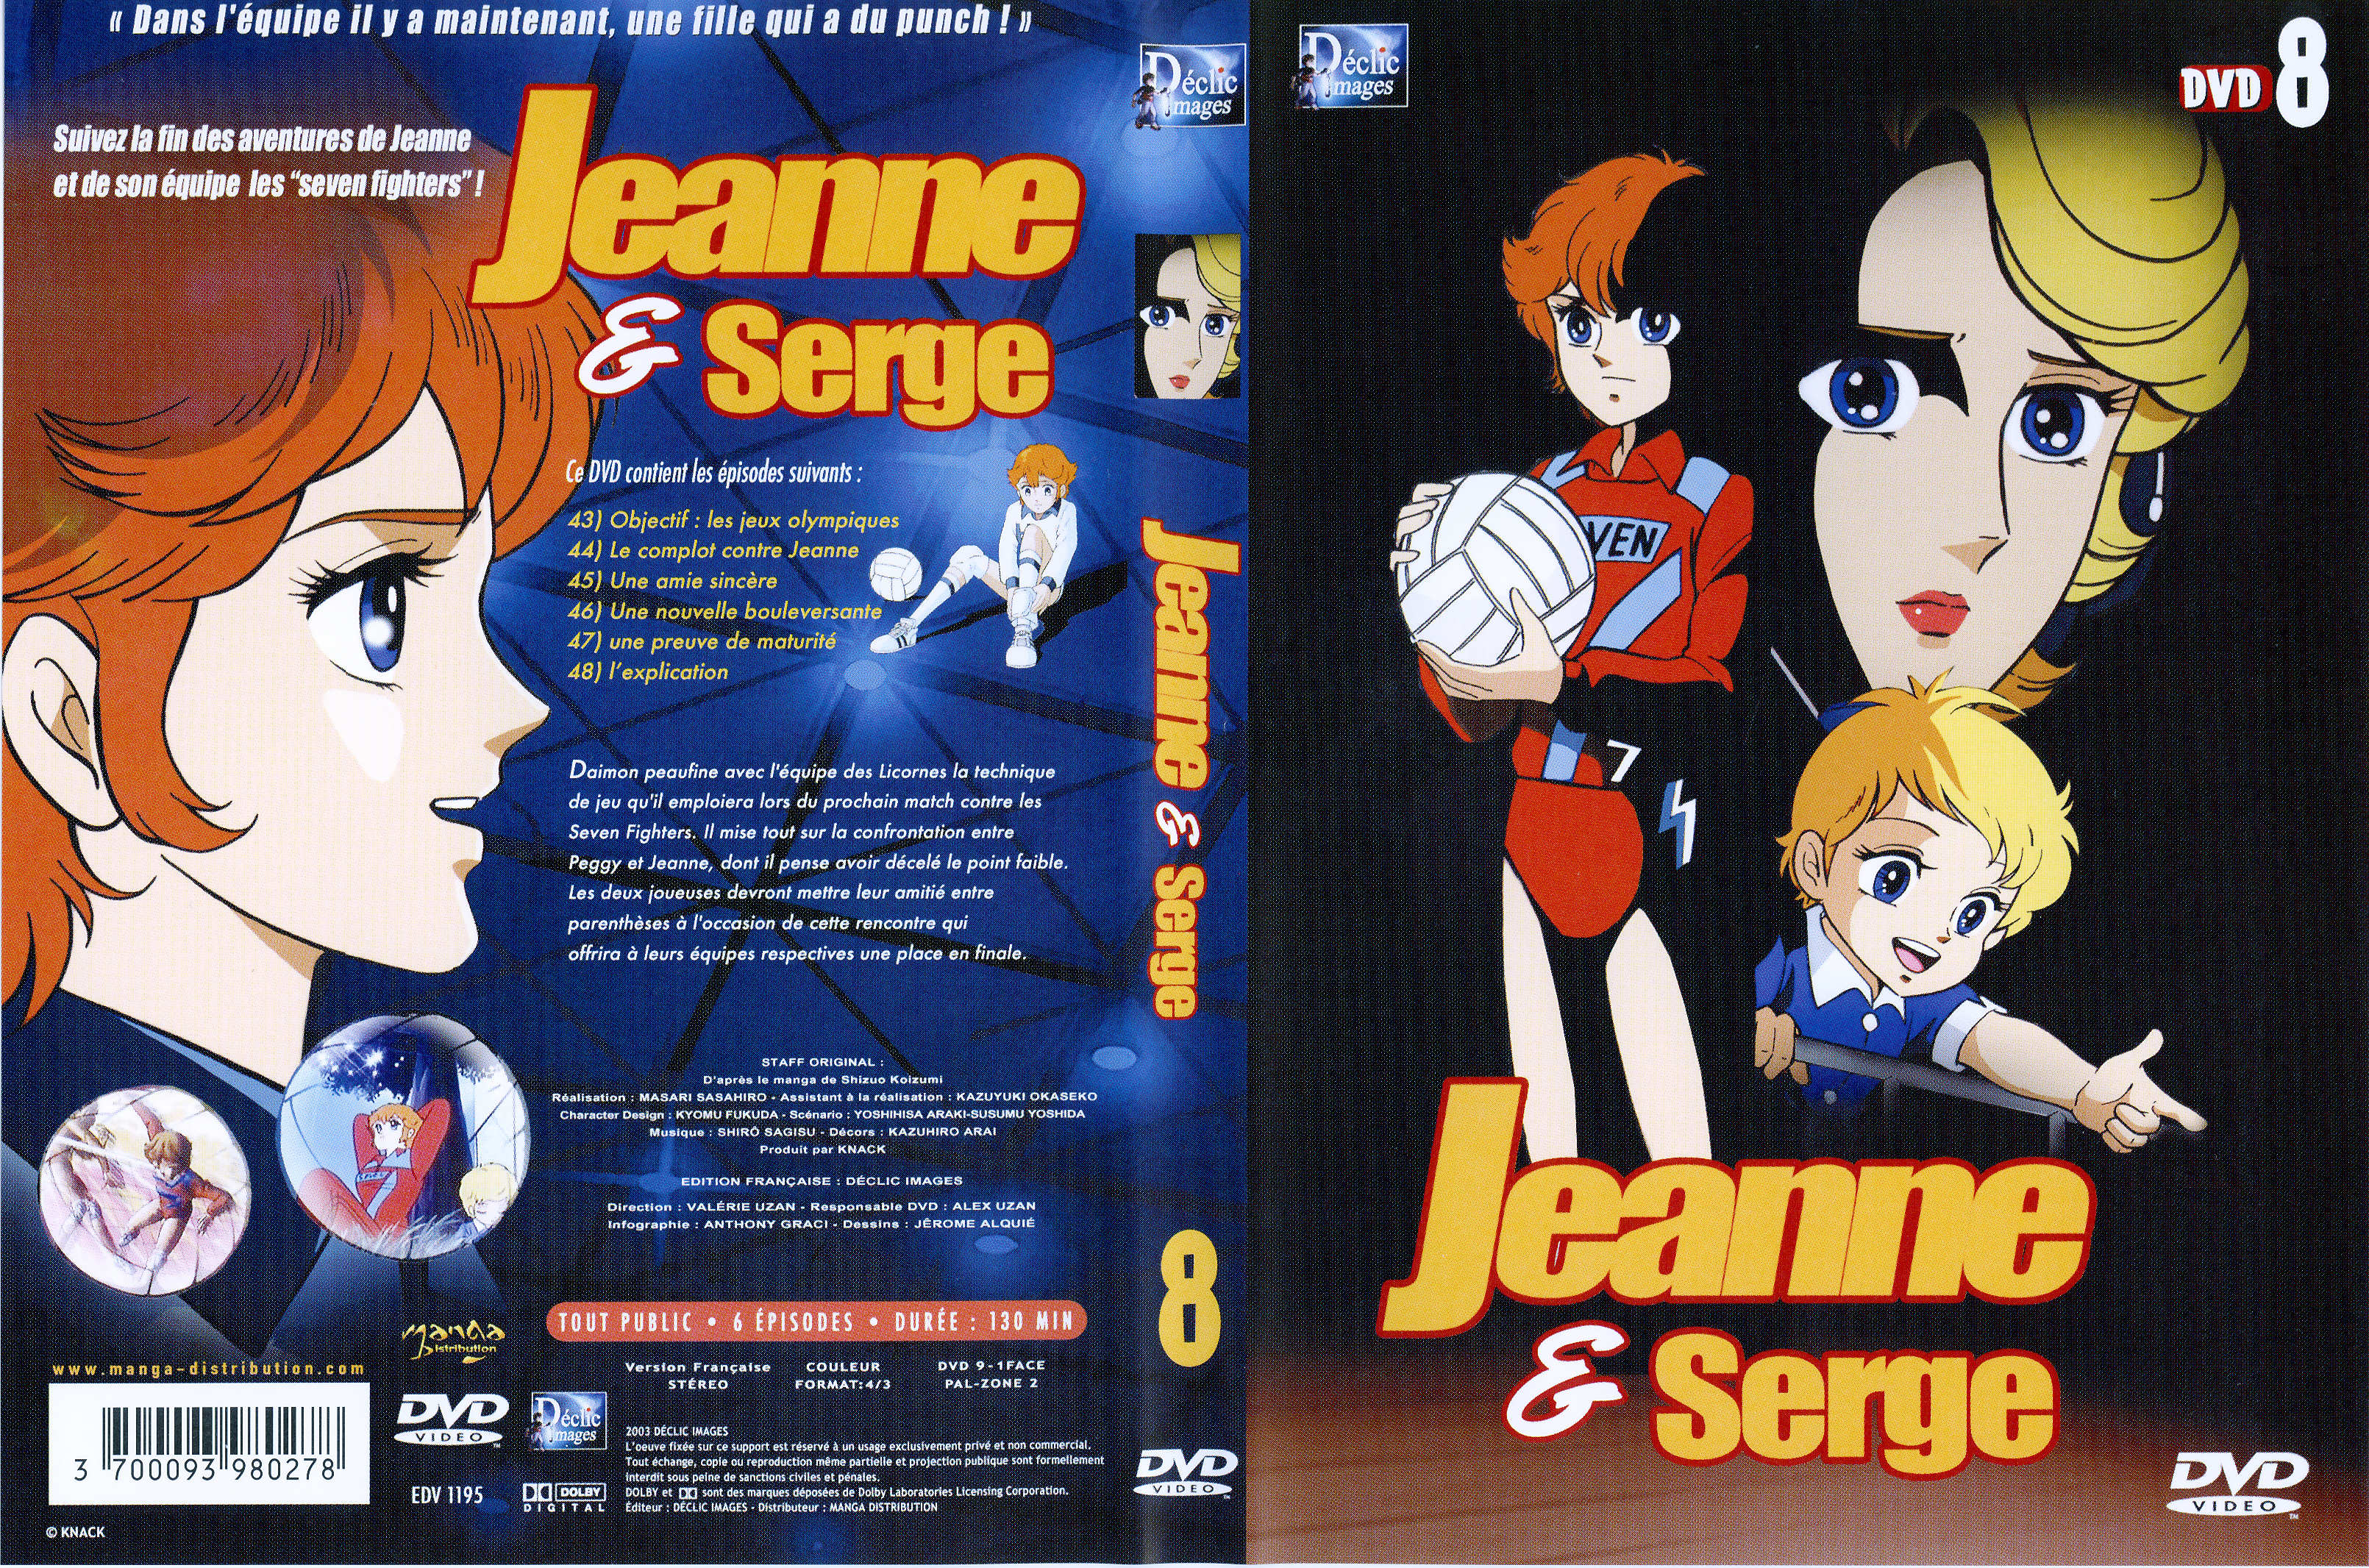 Jaquette DVD Jeanne et Serge vol 8